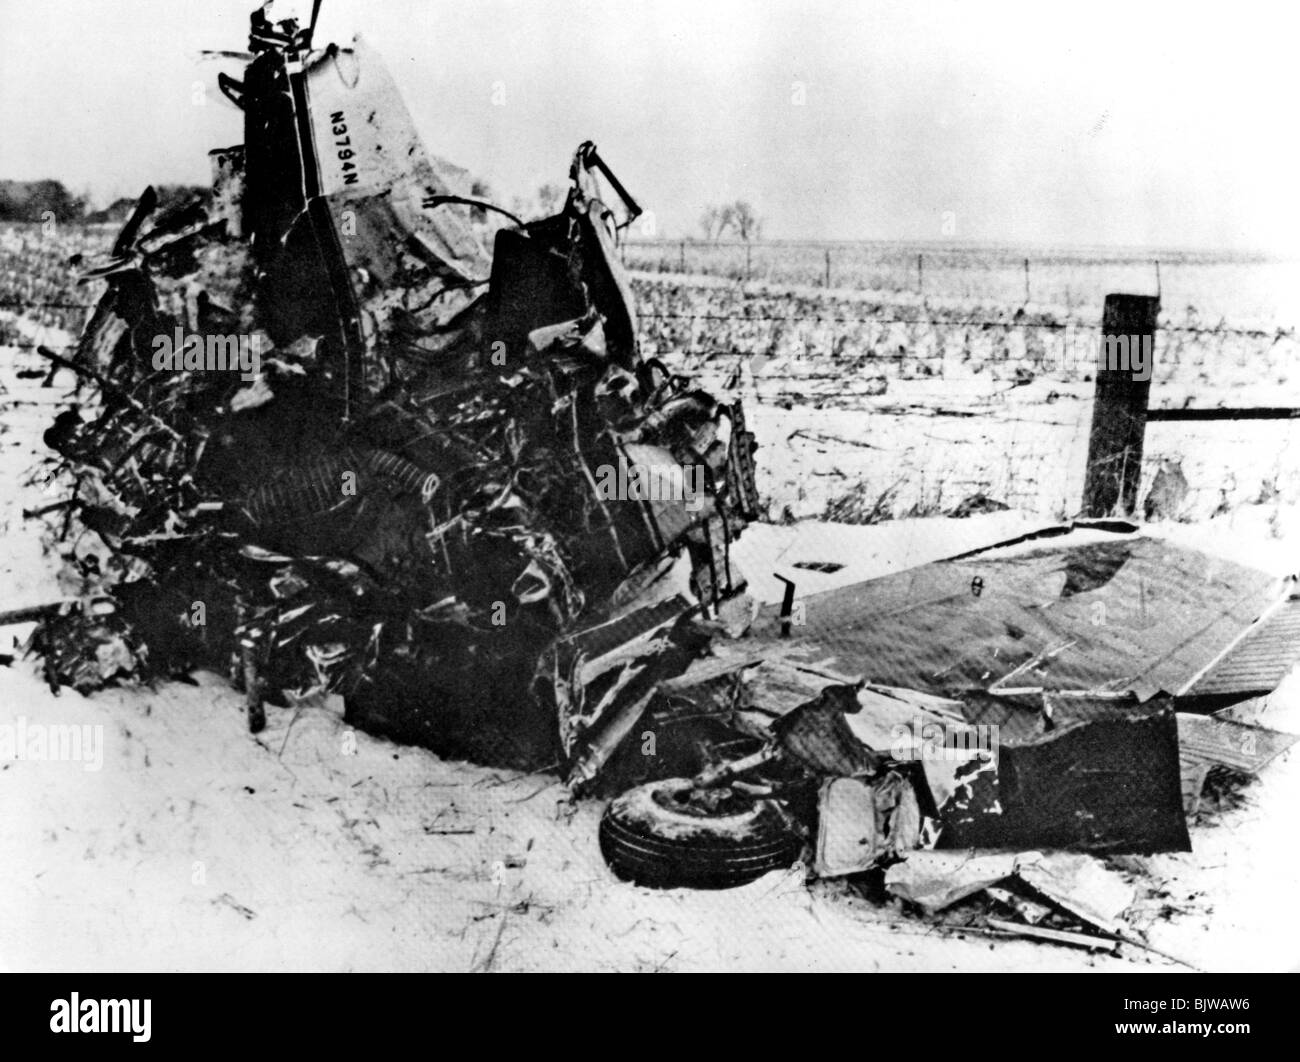 BUDDY HOLLY - Epave d'avion léger dans lequel Holly, Big Bopper et Ritchie Valens meurt à l'eau claire,le lac, de l'Iowa 3 Feb 1959 Banque D'Images